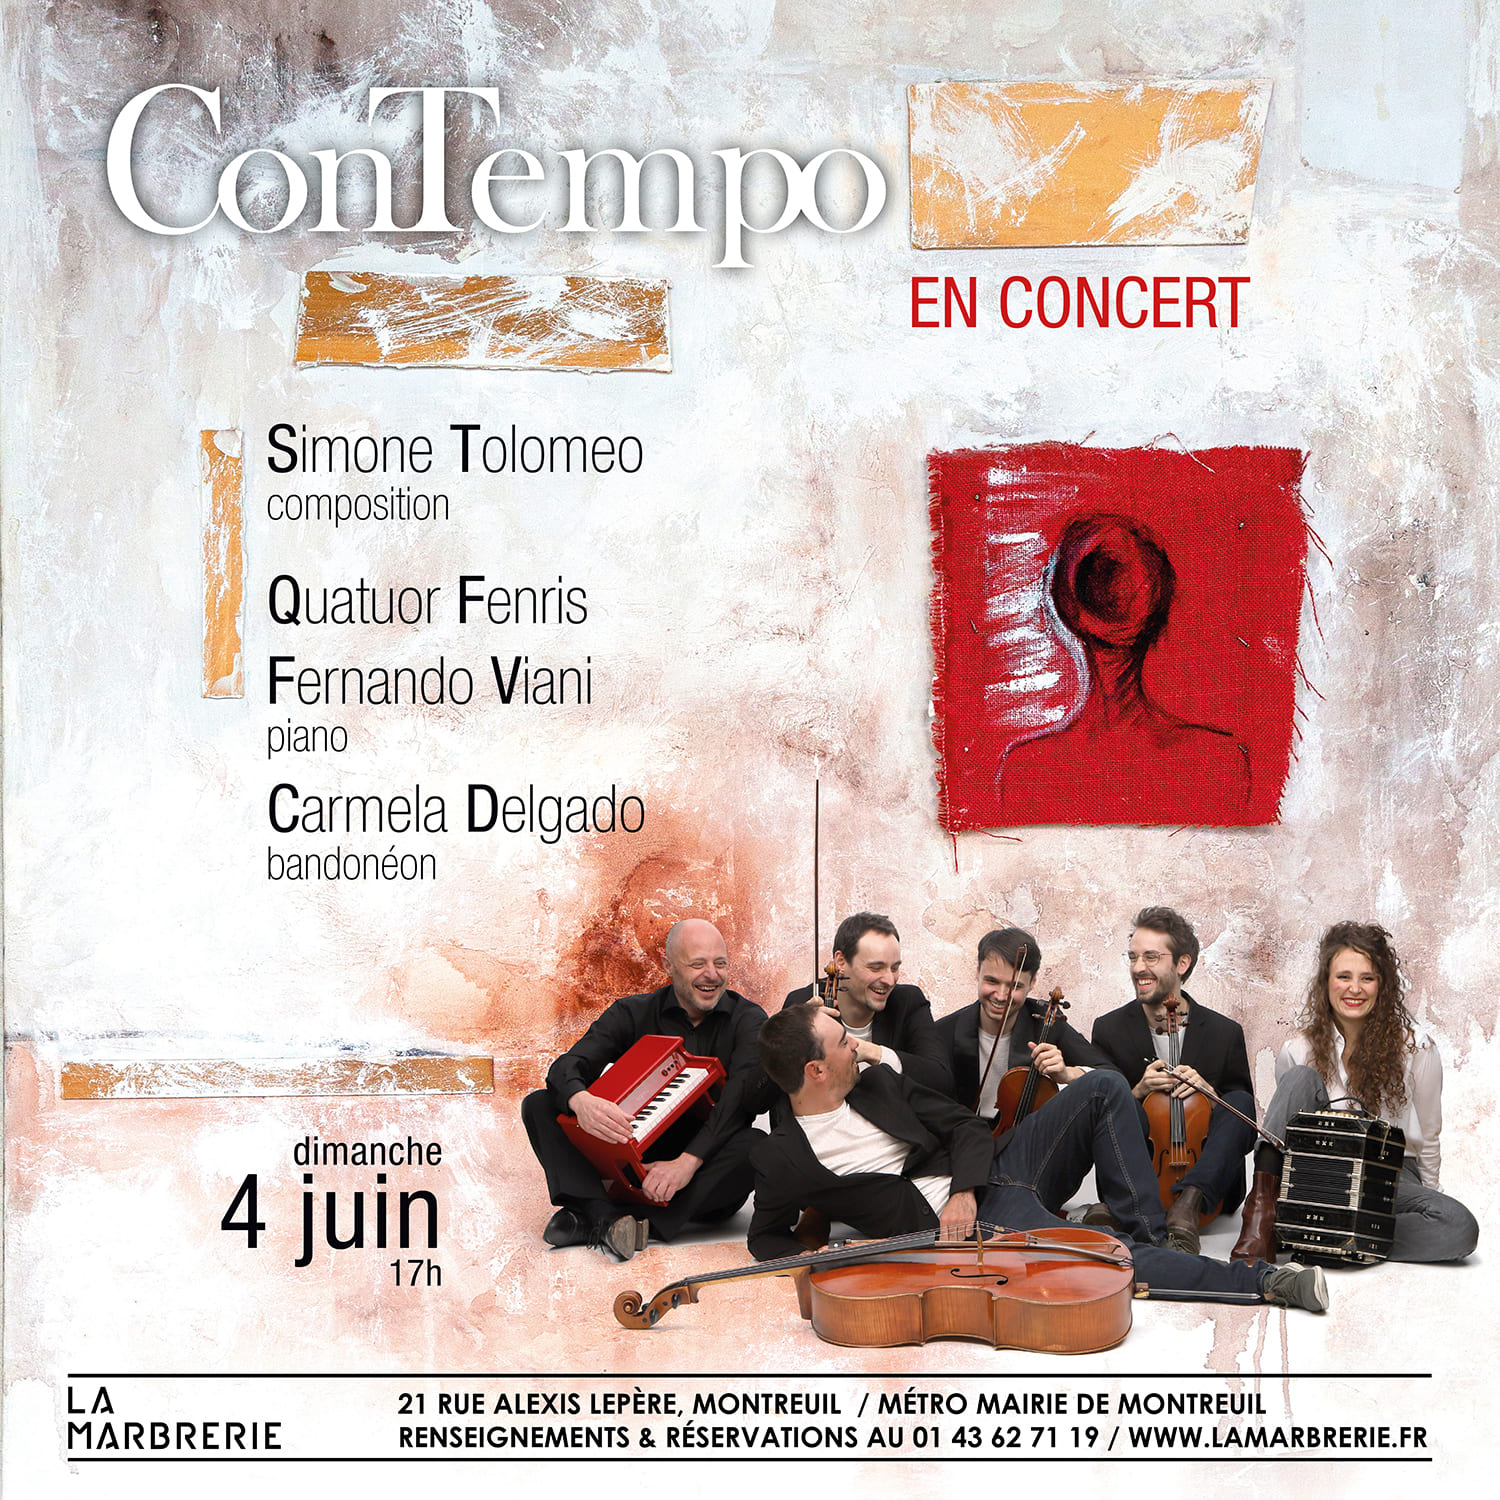 Concert of ConTempo at “La Marbrerie”